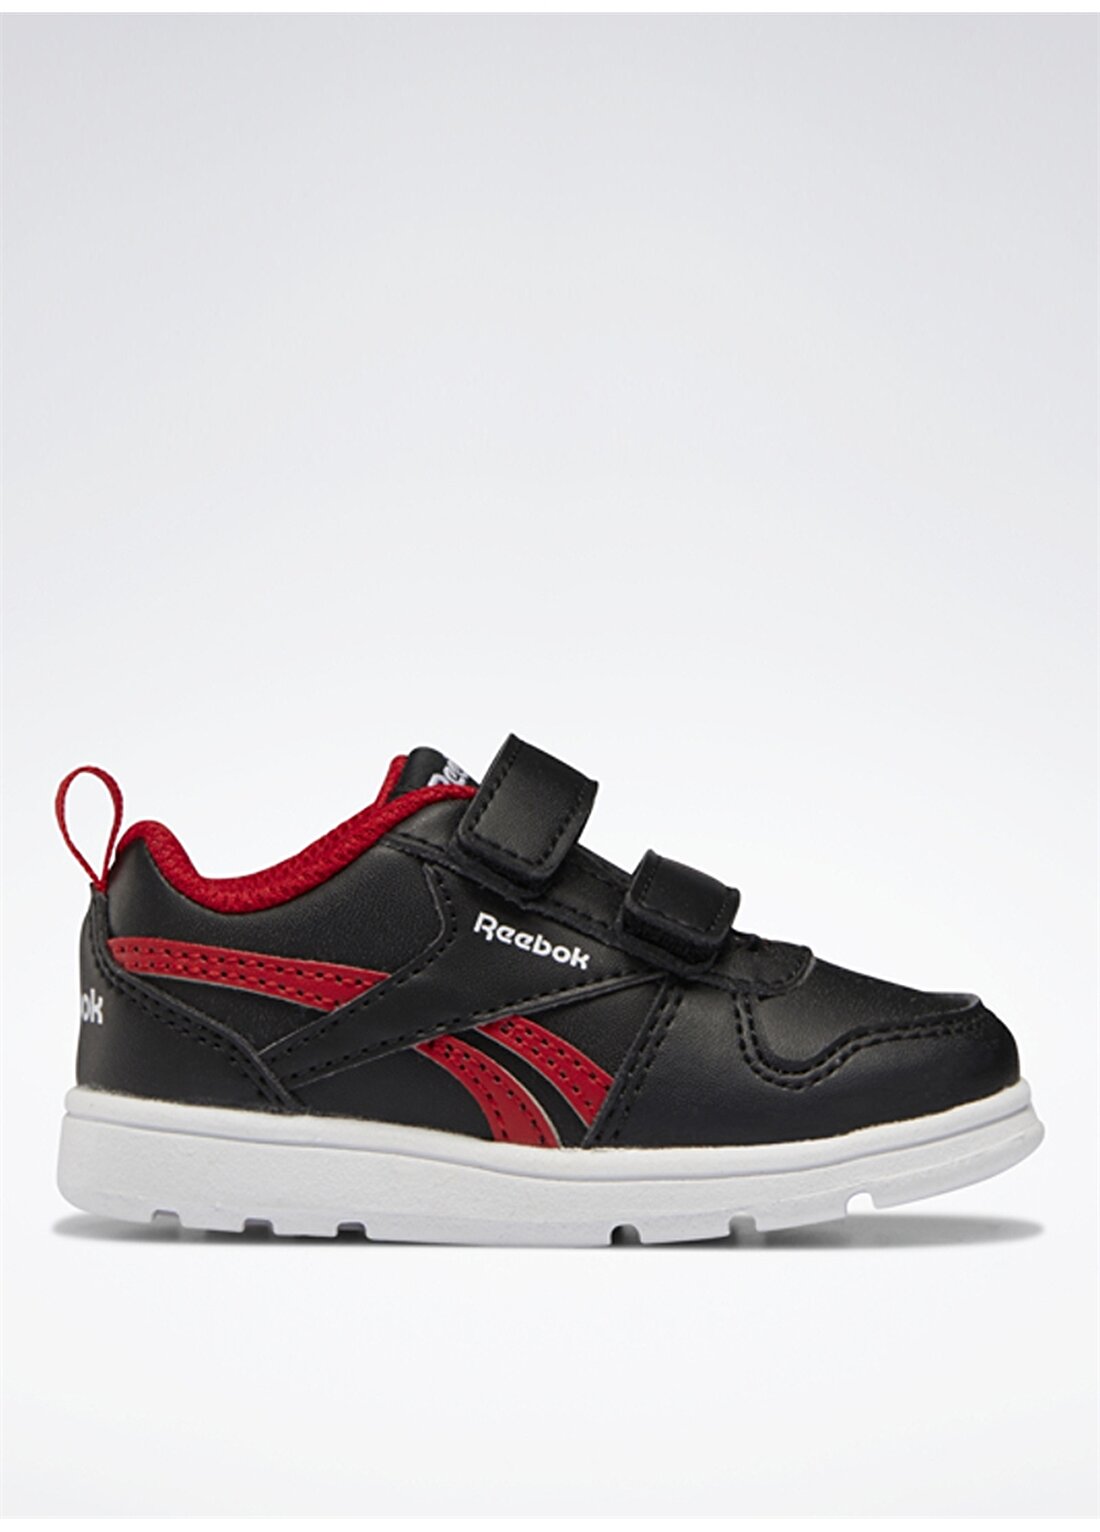 Reebok Siyah - Kırmızı Bebek Yürüyüş Ayakkabısı H04955 REEBOK ROYAL PRIME 2.0 2V